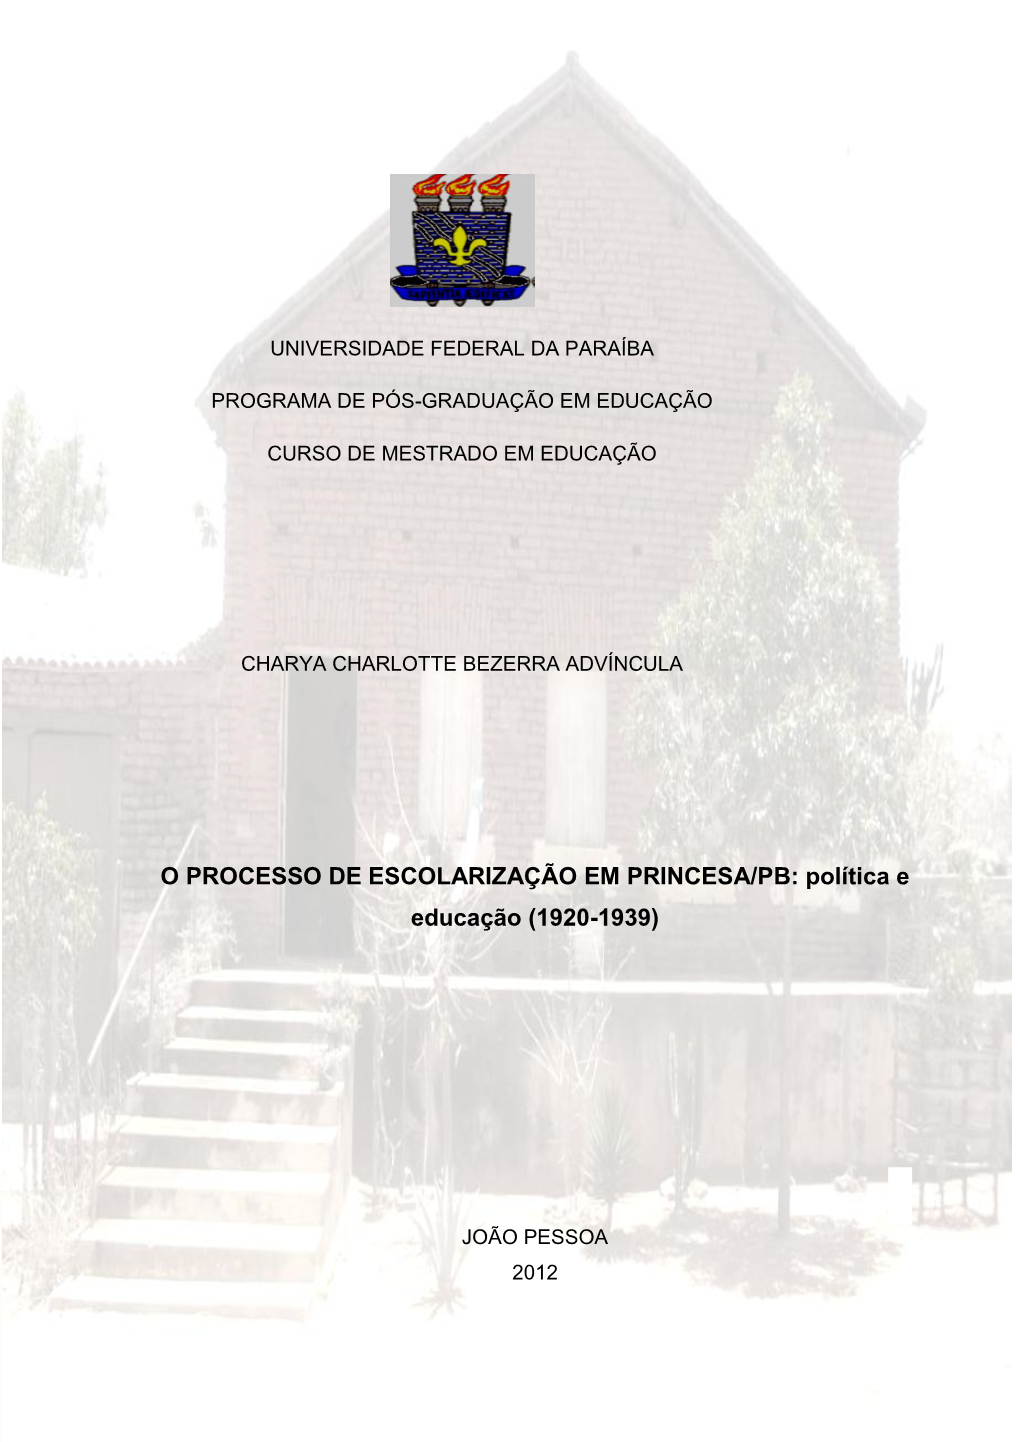 O PROCESSO DE ESCOLARIZAÇÃO EM PRINCESA/PB: Política E Educação (1920-1939)